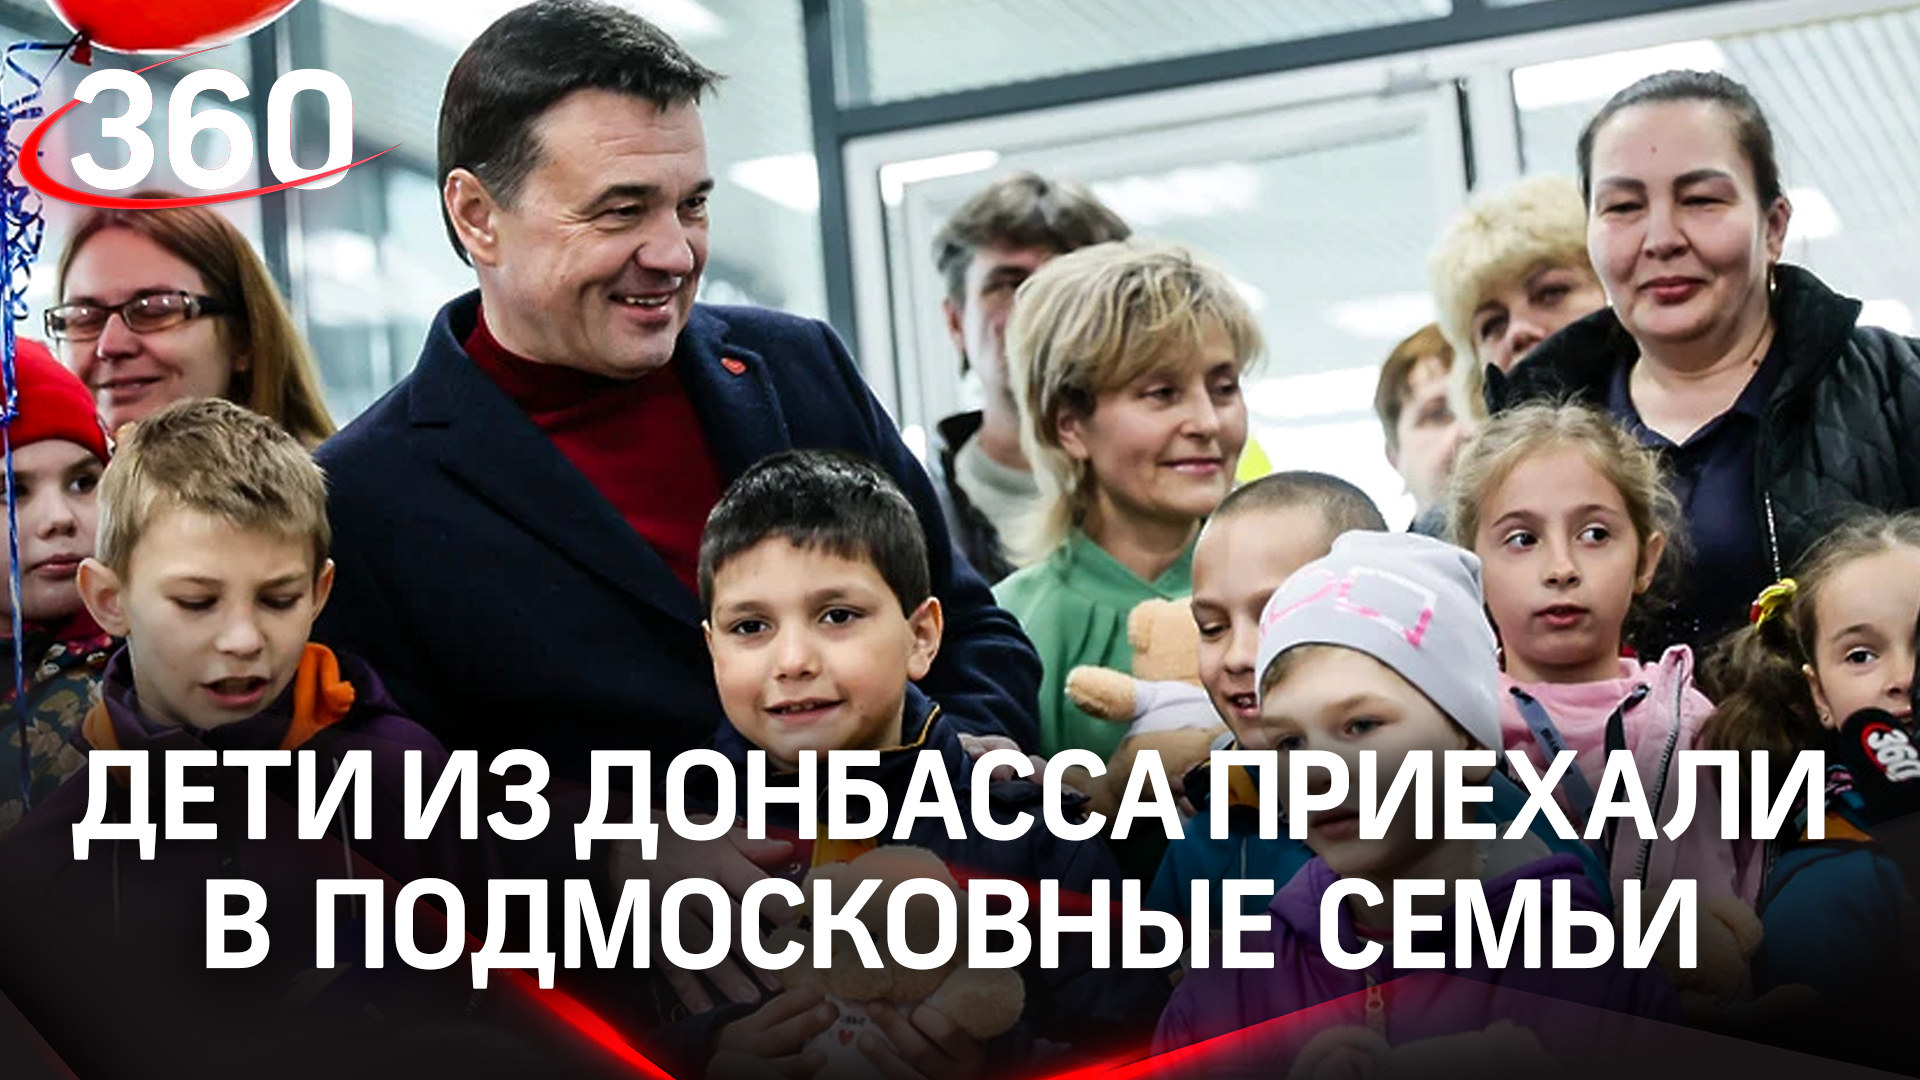 «Мы едем домой!» 27 детей из Донбасса приехали в подмосковные семьи